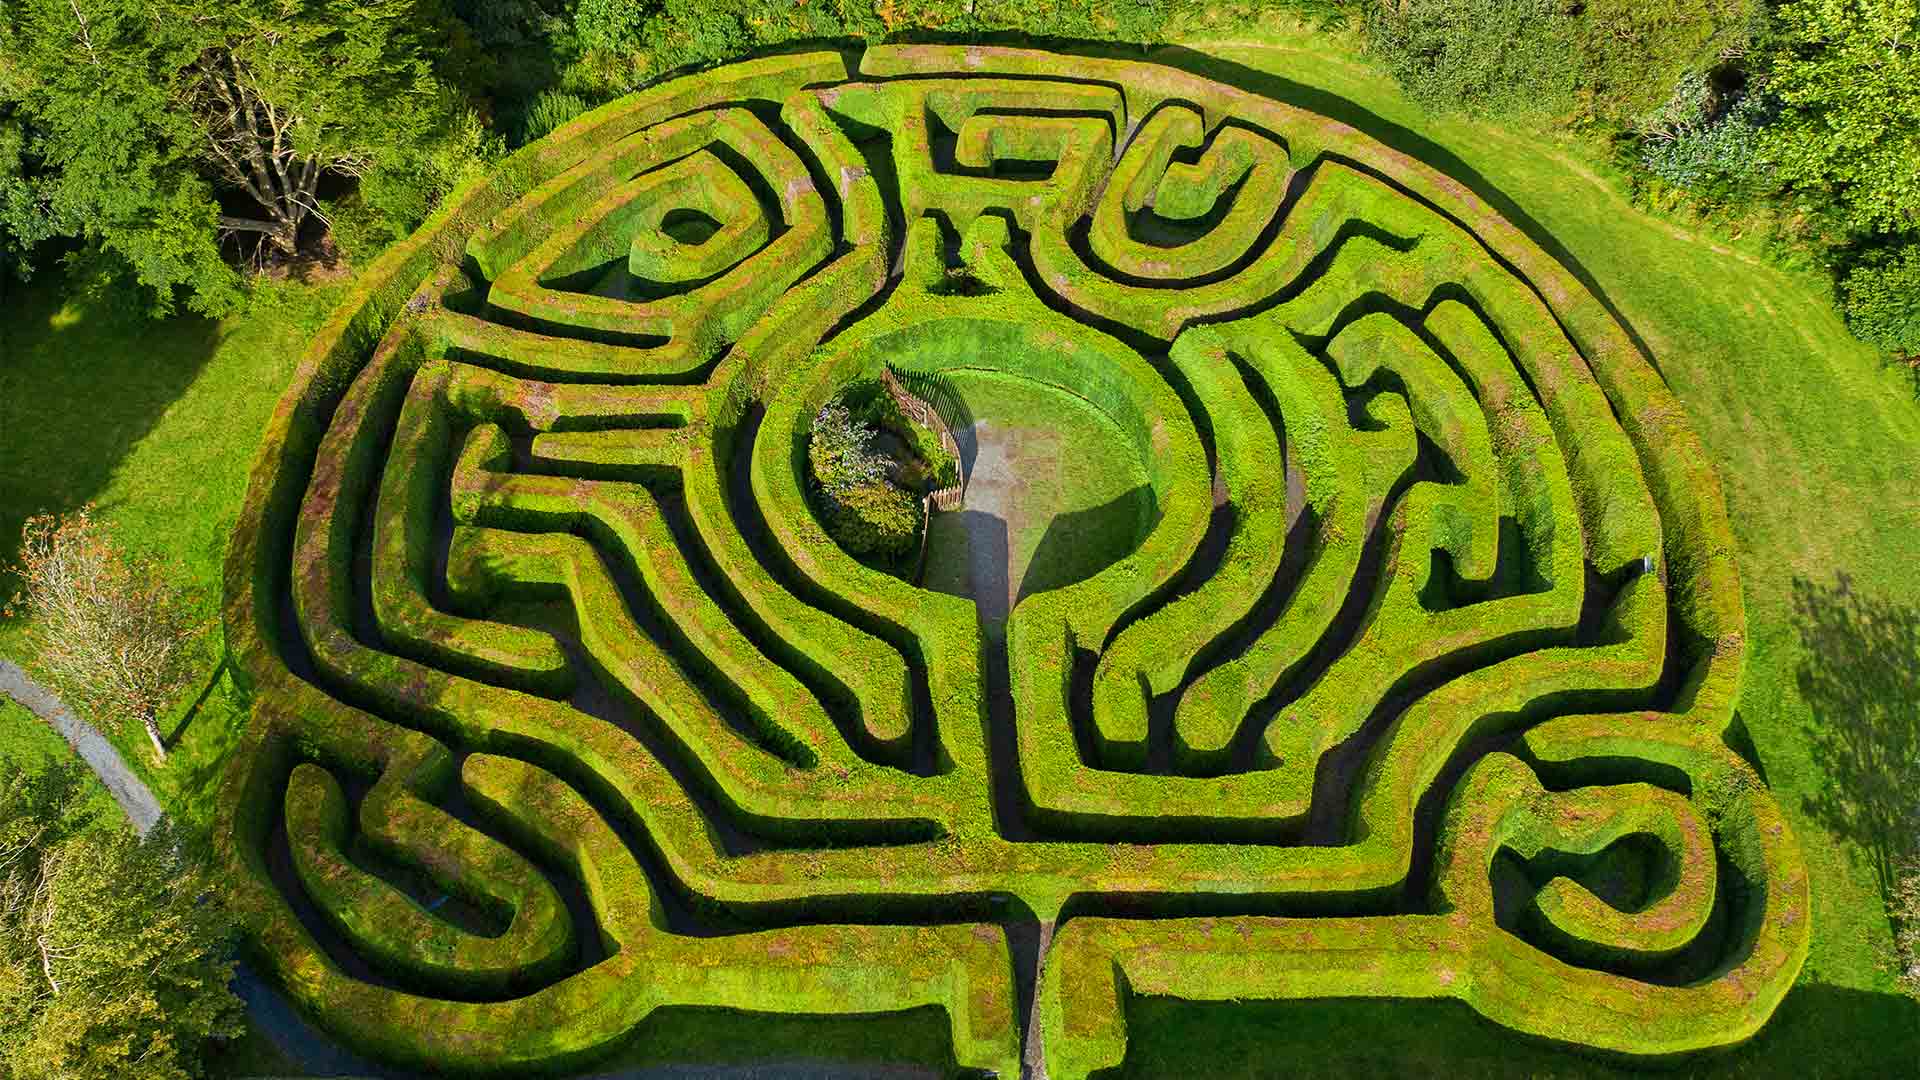 A maze in Ireland